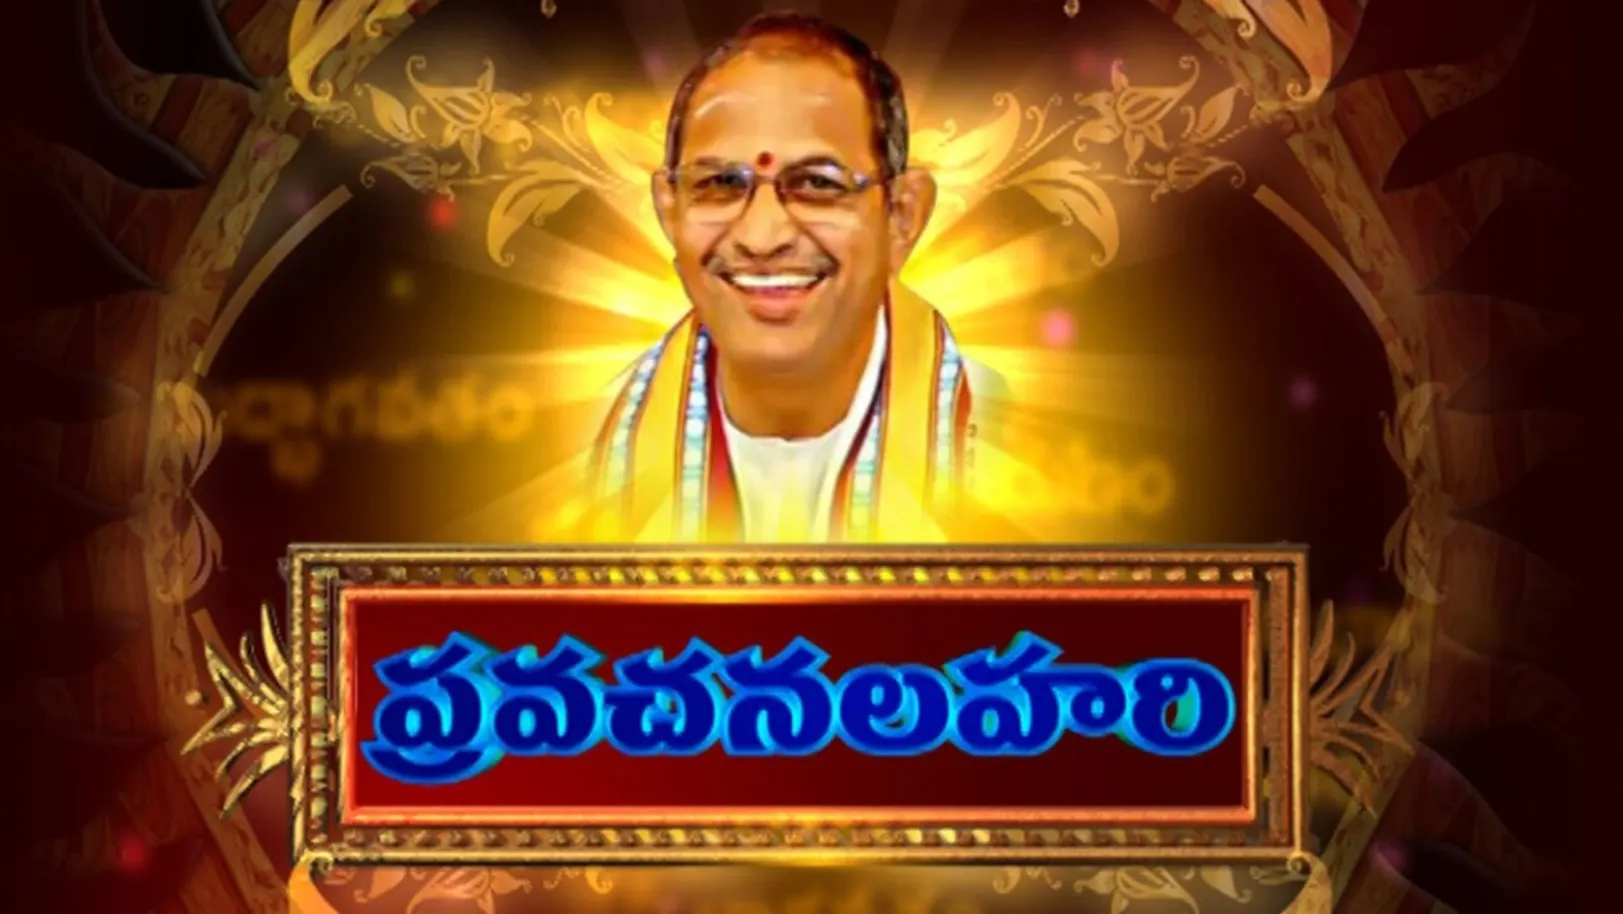 Pravachanlahari Streaming Now On Aastha Telugu